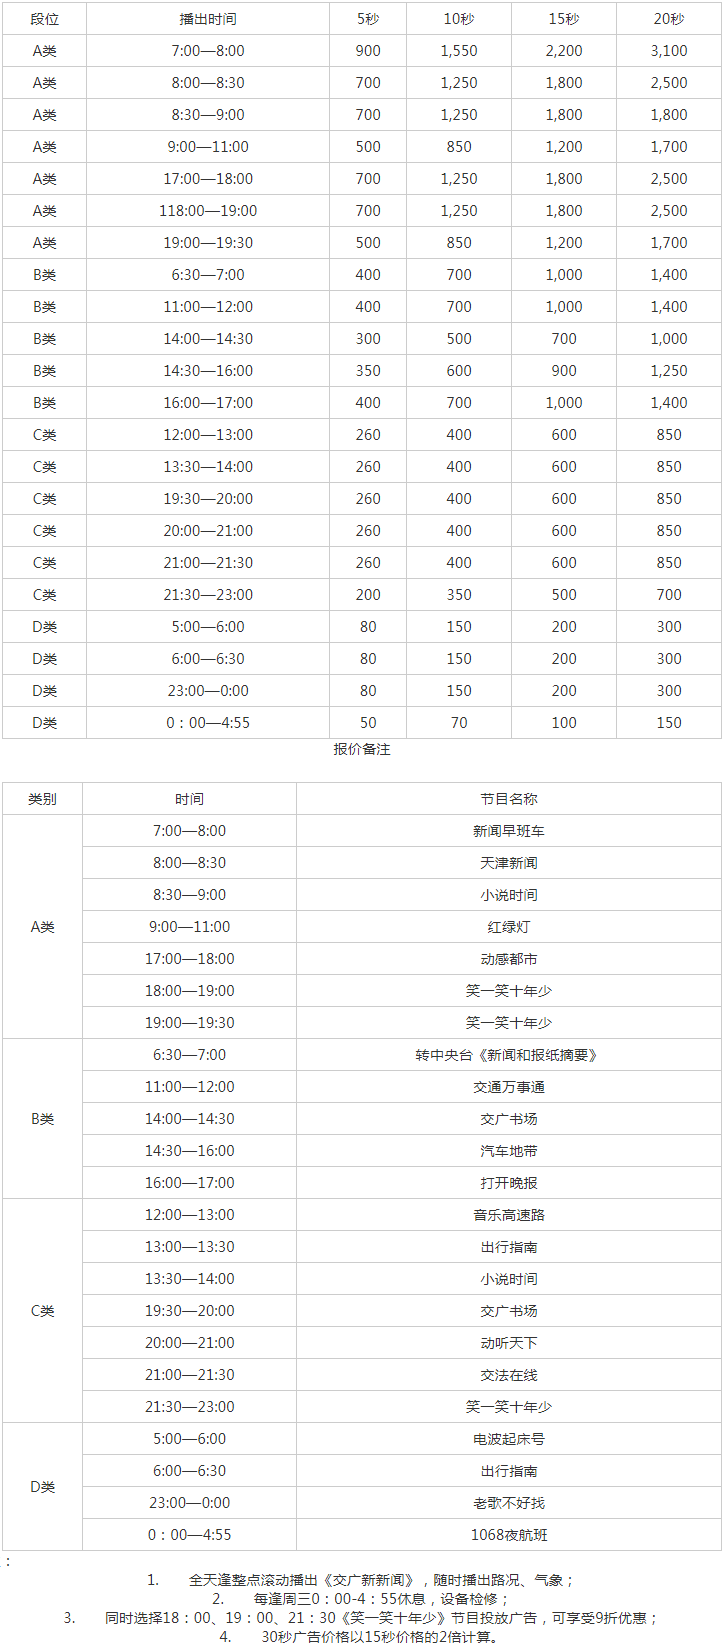 2010天津人民广播电台交通台 FM 106.8广告报价表.png